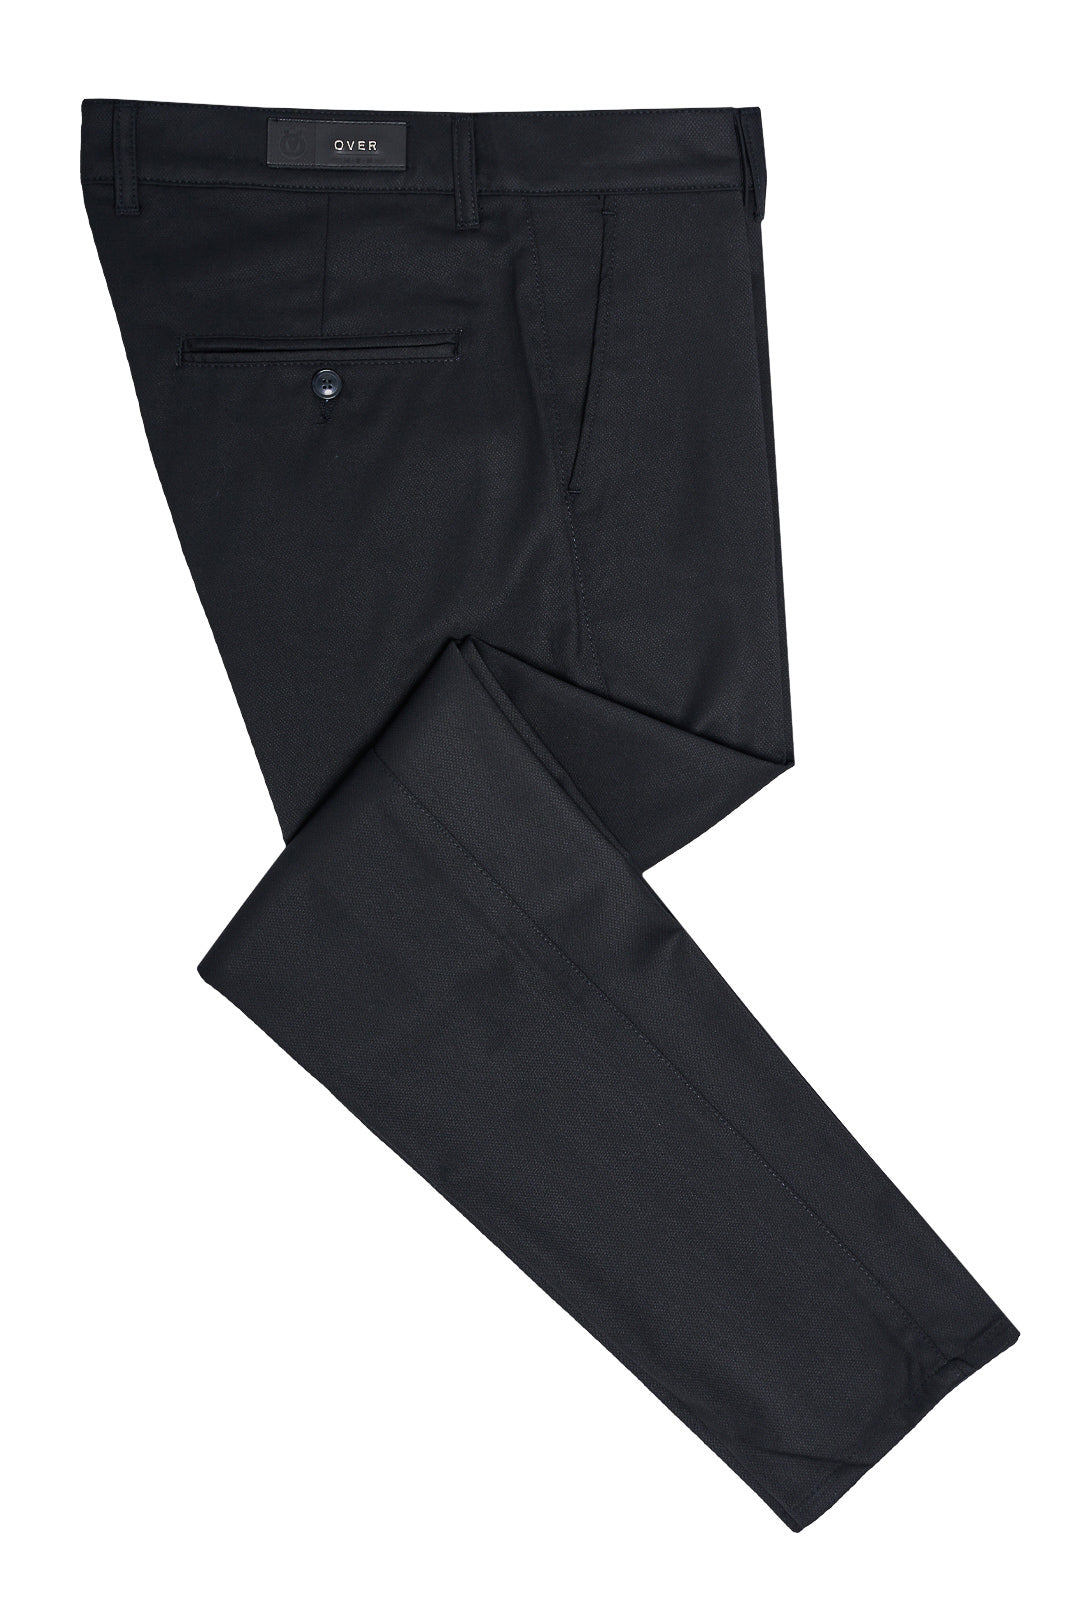 Textured Piqué Black Pants